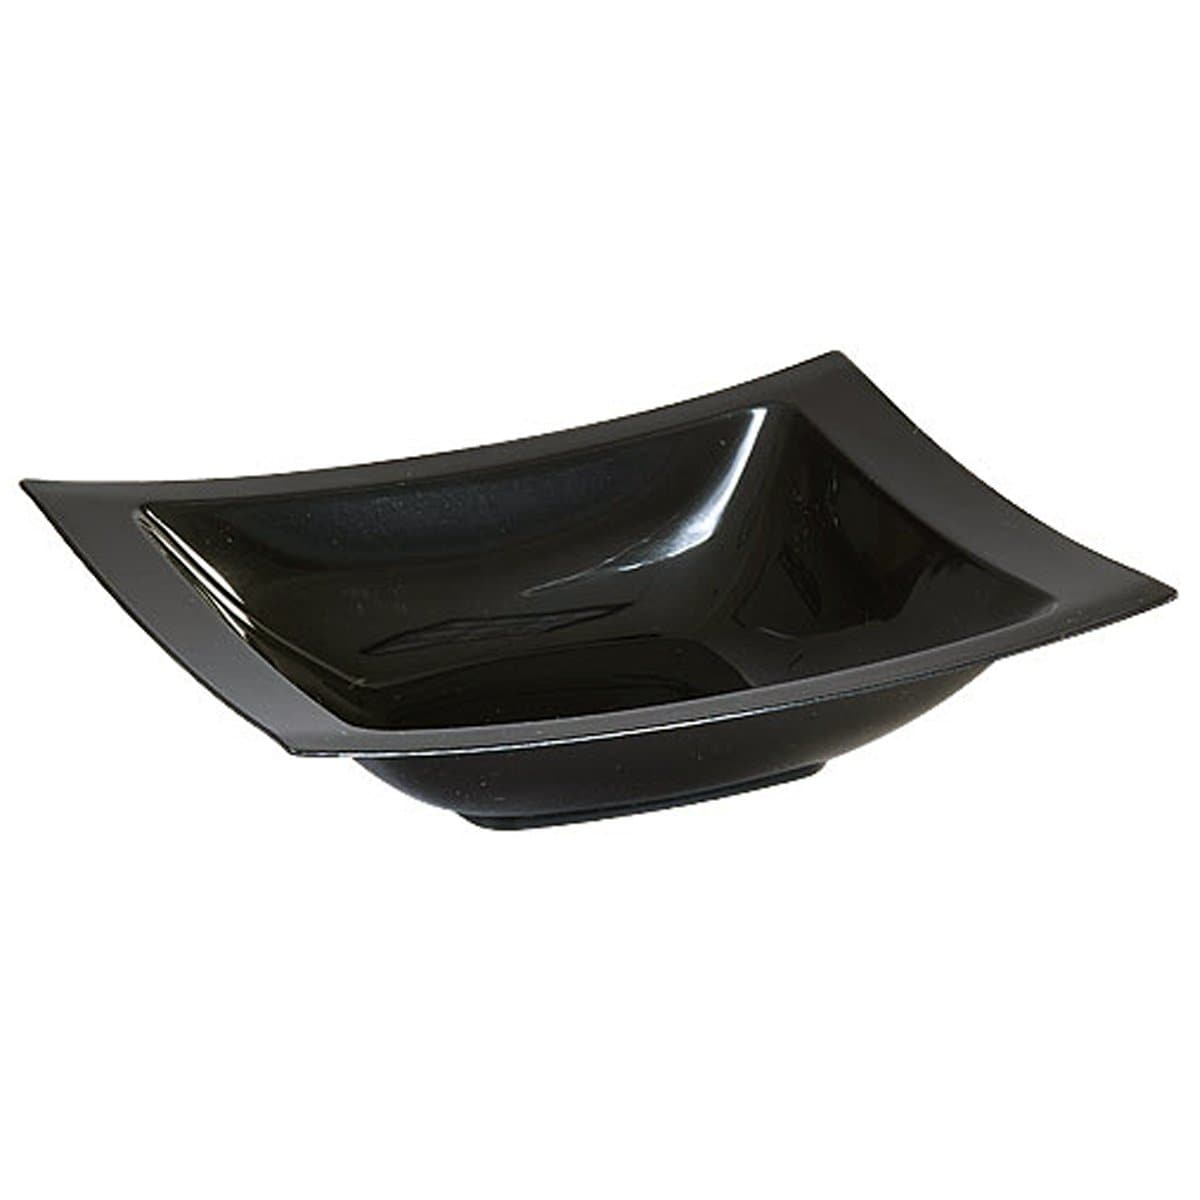 Rectangular Plastic Dessert Bowls Black 5 oz Bowls Lillian Tablesettings   